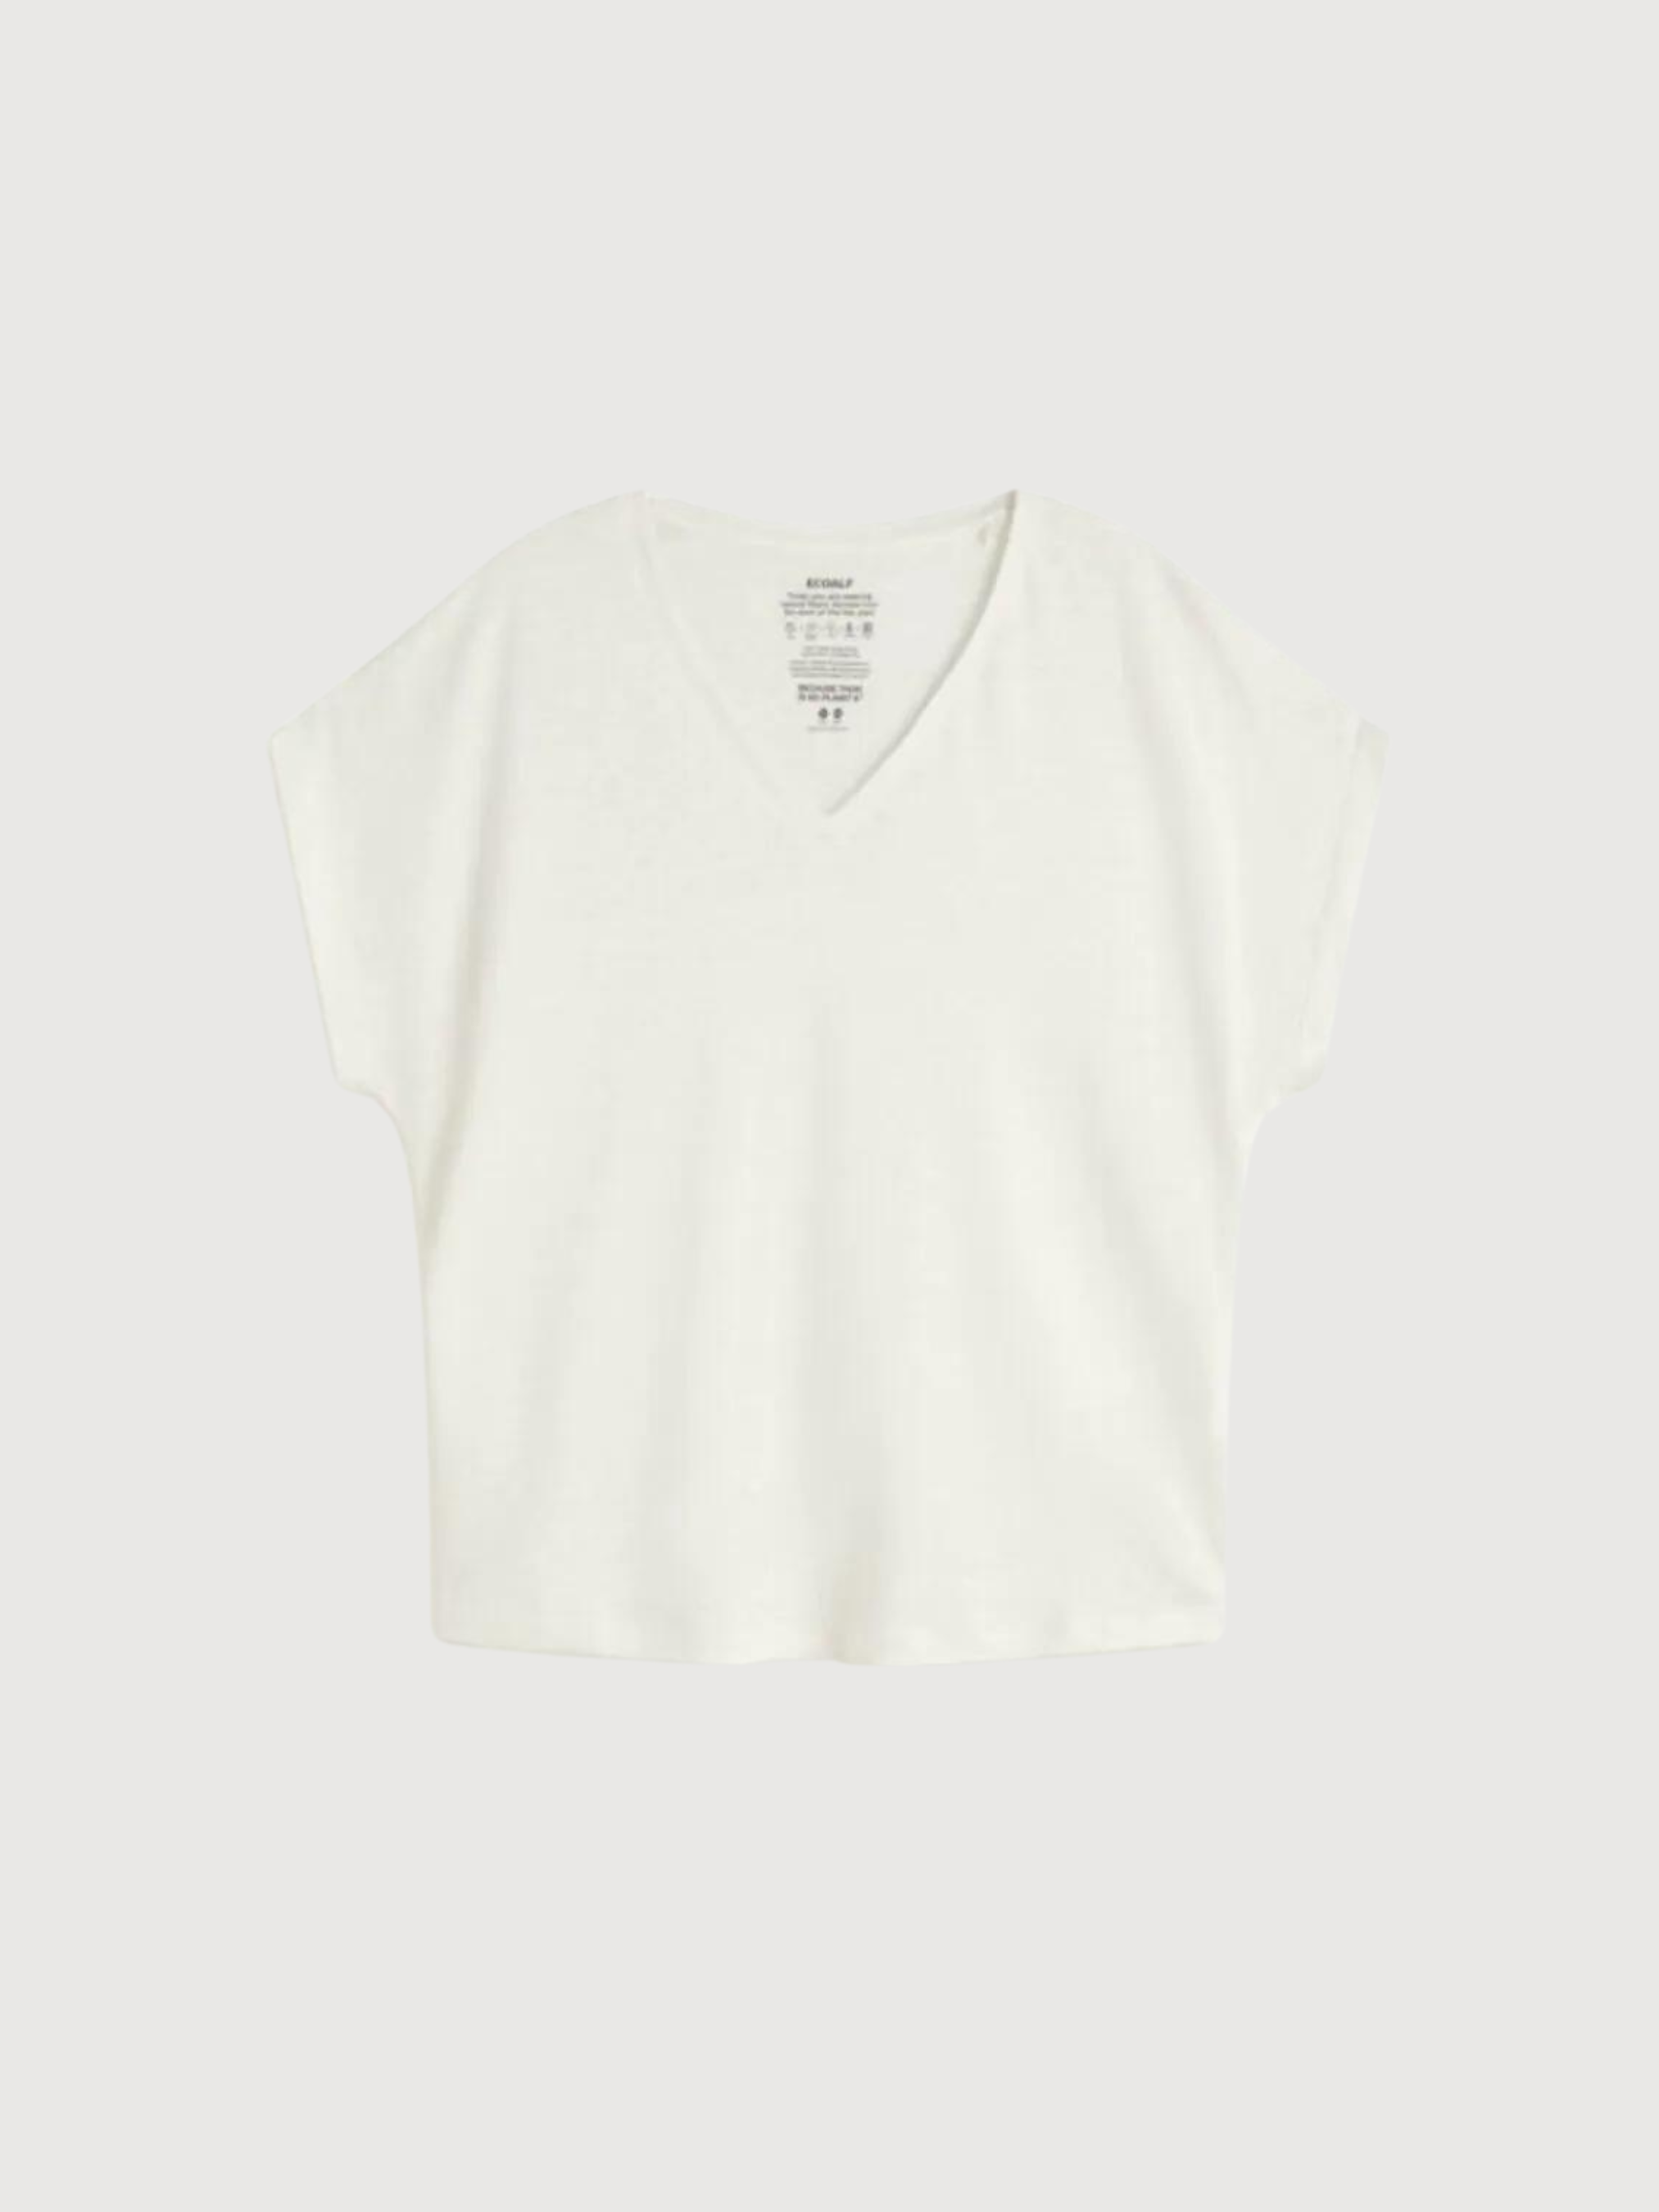 T-Shirt Arendal Weiß in Leinen | Ecoalf